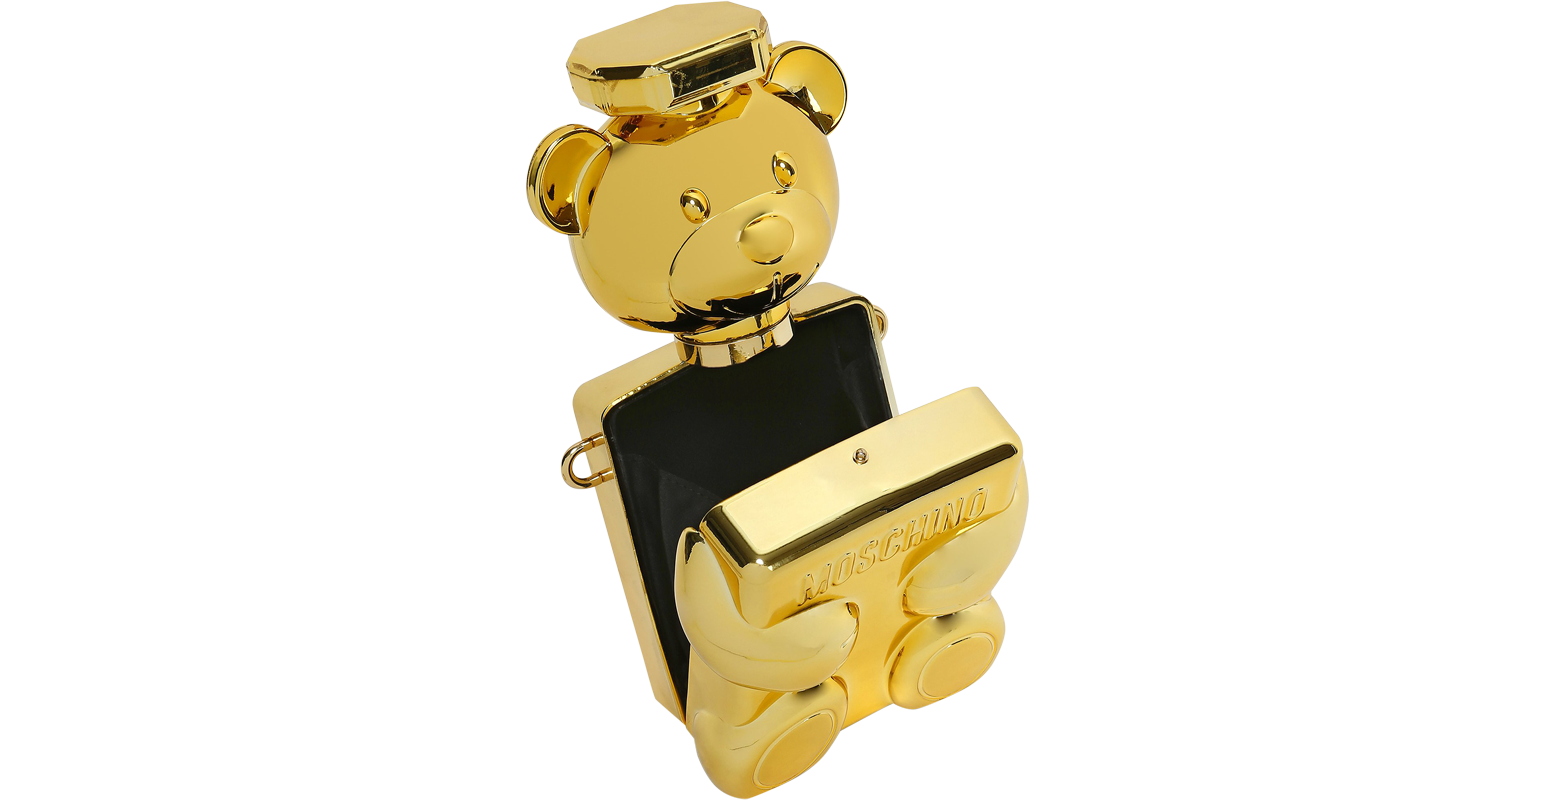 Qoo10 - toyboy mbox : Bag & Wallet